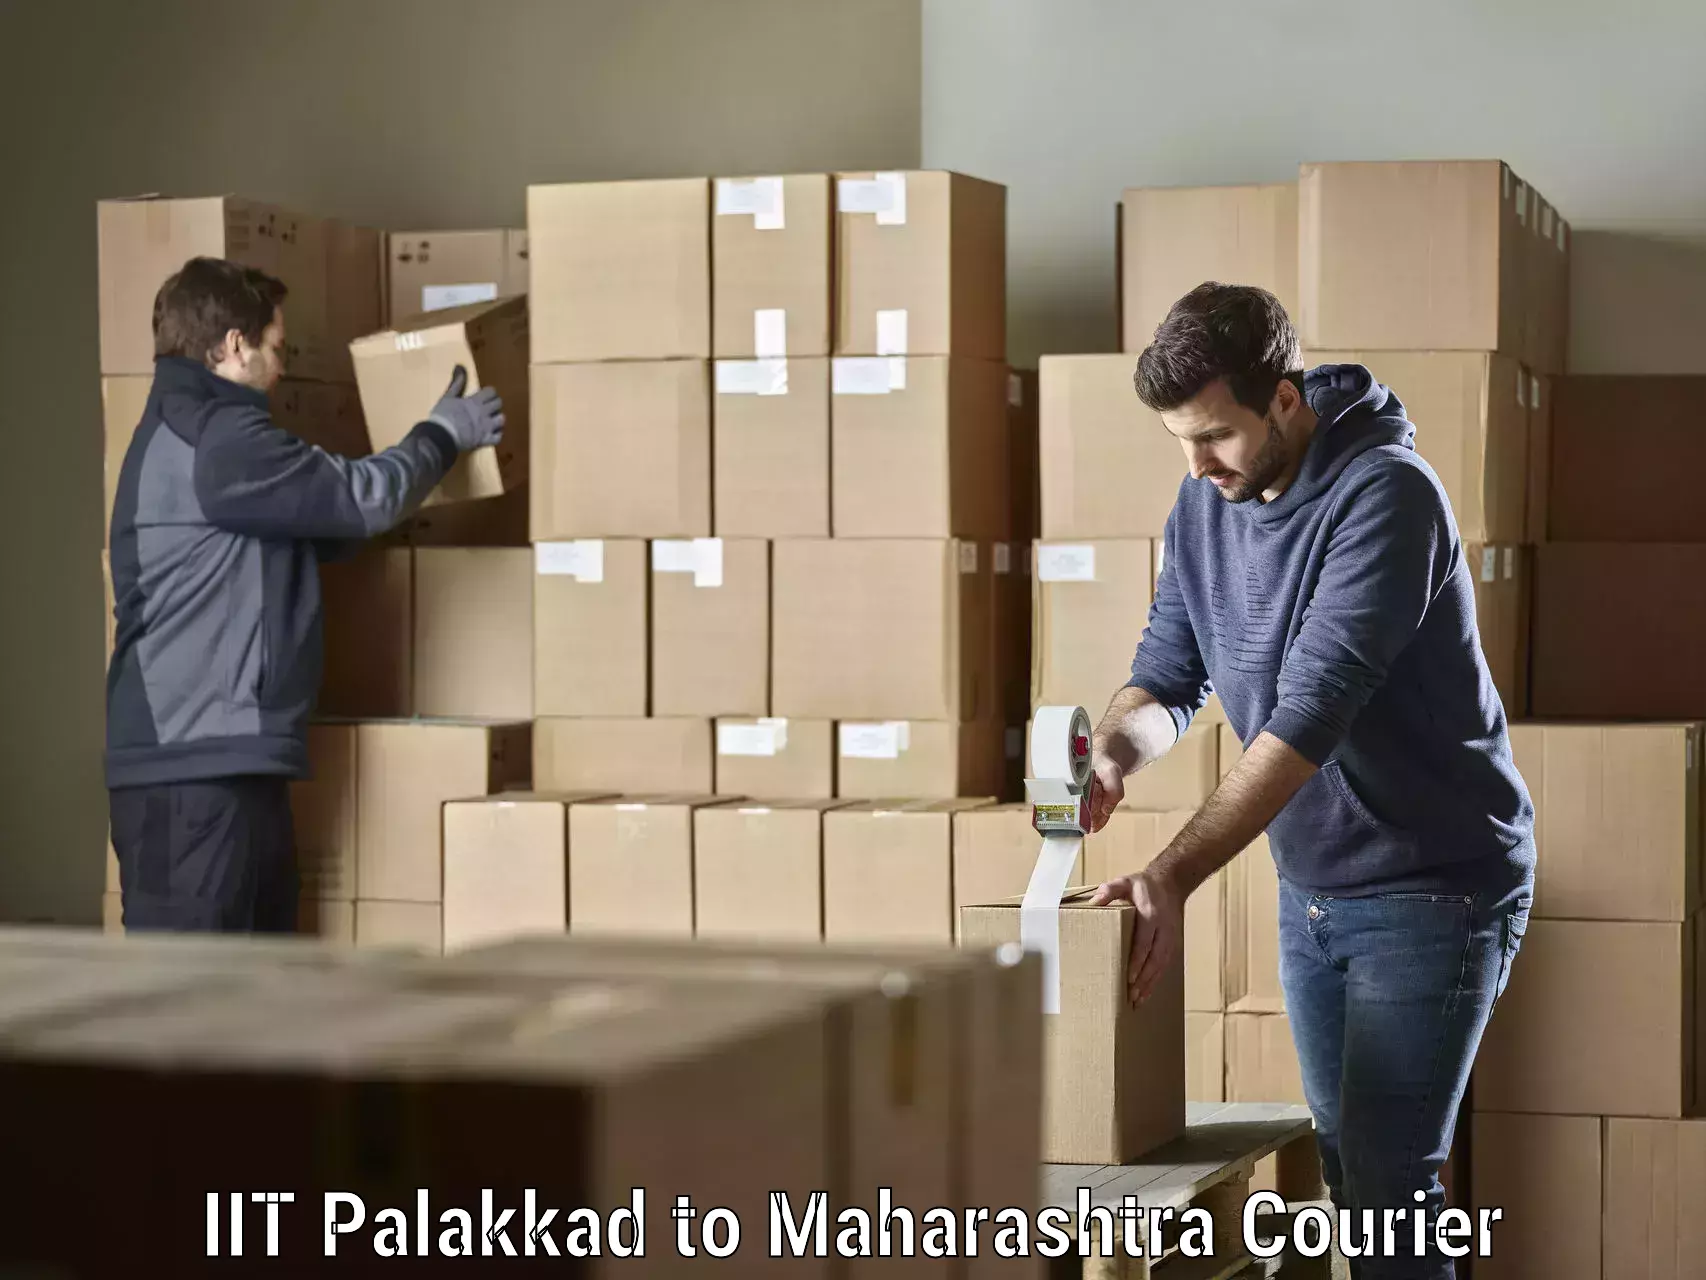 Urban courier service IIT Palakkad to Mumbai University